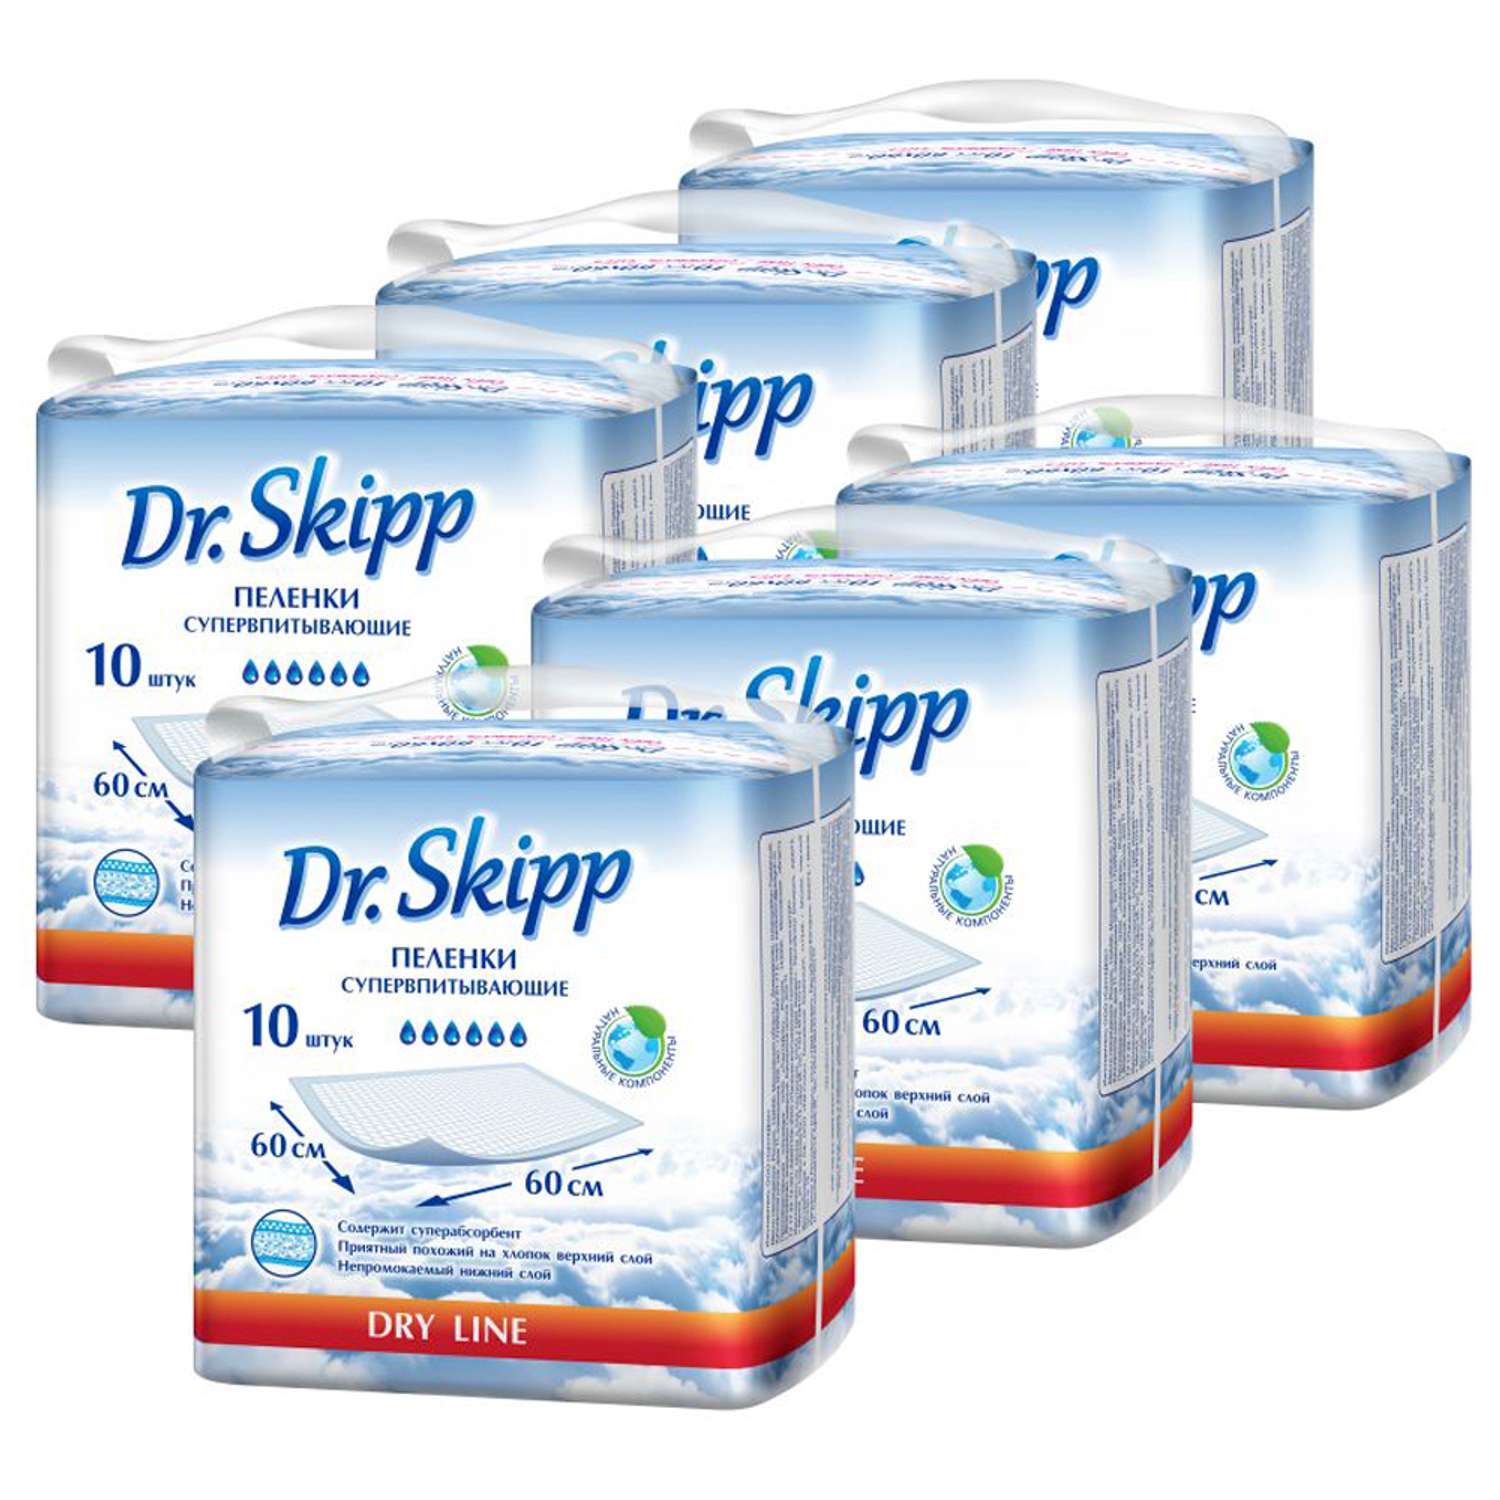 Пеленки впитывающие Dr.Skipp одноразовые 60x60 6 упаковки по 10 шт 8076 - фото 1